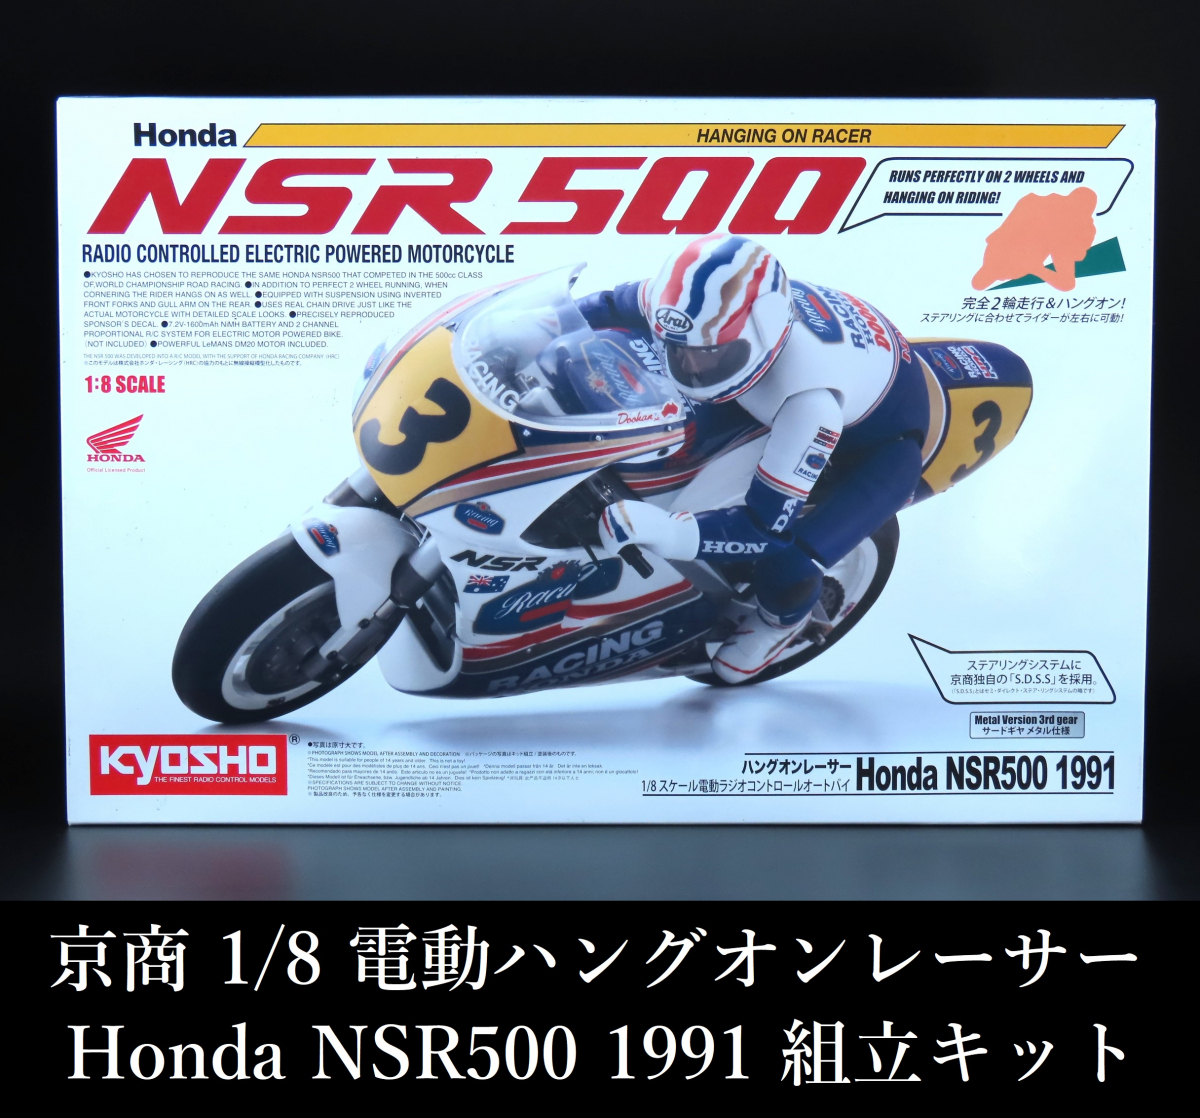 京商 1/8 電動バイク ハングオンレーサー Honda NSR500 1991 ホビーラジコン ネット限定 超特価セール